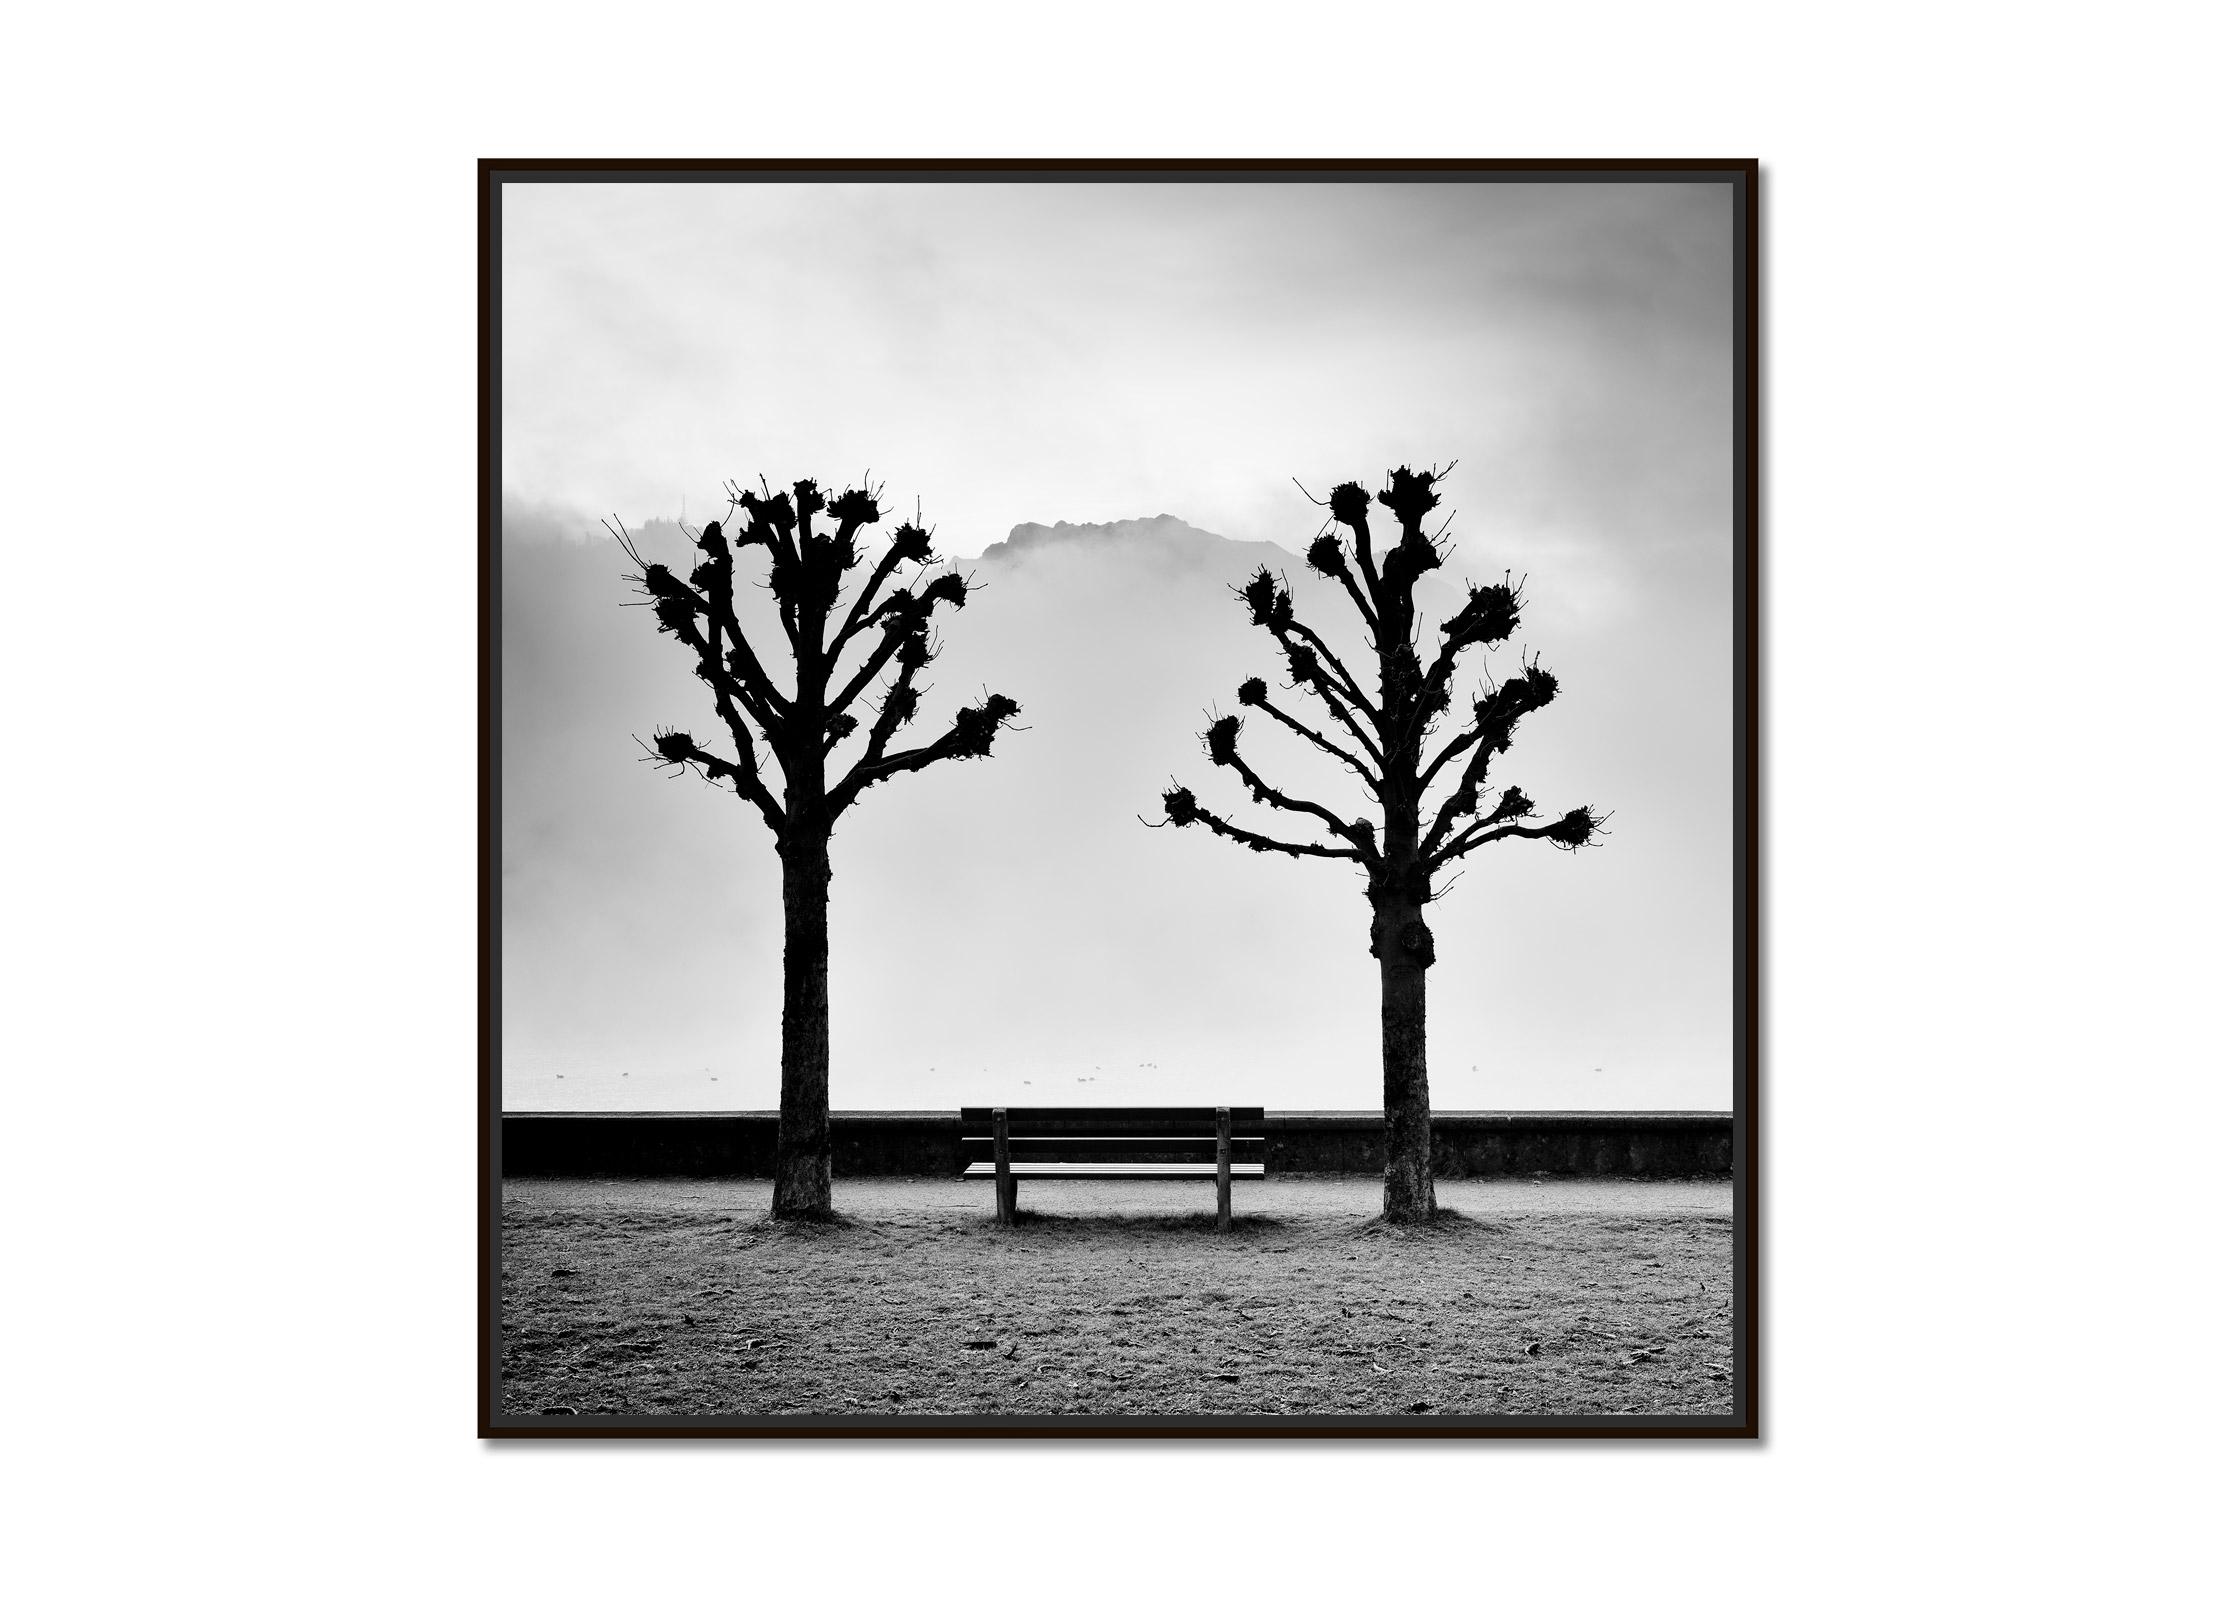 Kastanienbäume auf der Promenade, Traunsee, b&w Kunstfotografie, Landschaft – Print von Gerald Berghammer